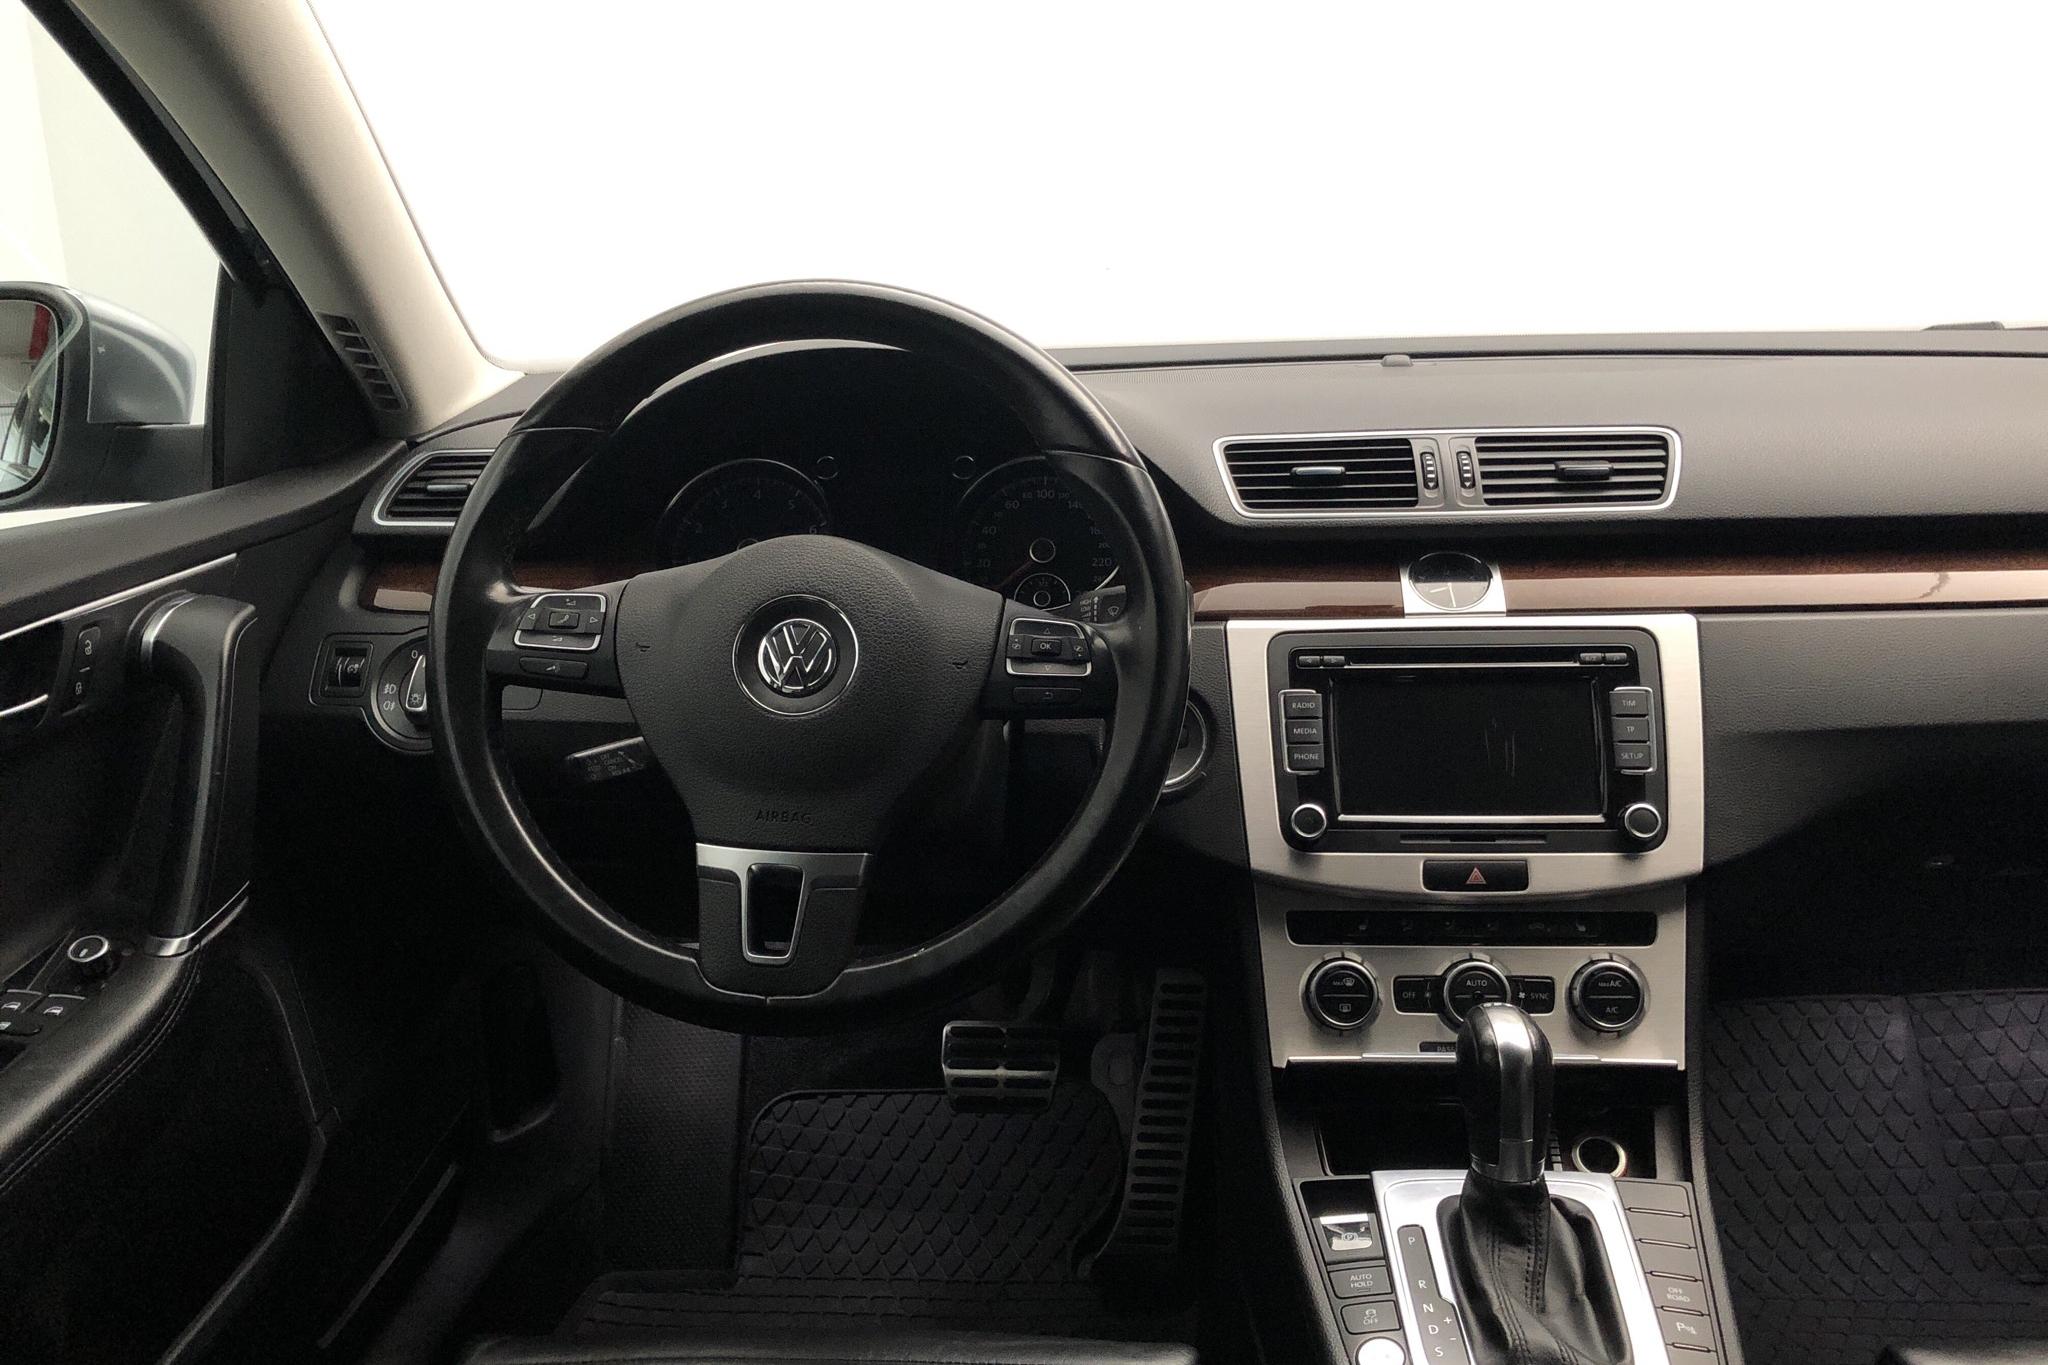 VW Passat Alltrack 2.0 TFSI BlueMotion Technology 4Motion (211hk) - 243 290 km - Automatic - Light Grey - 2013